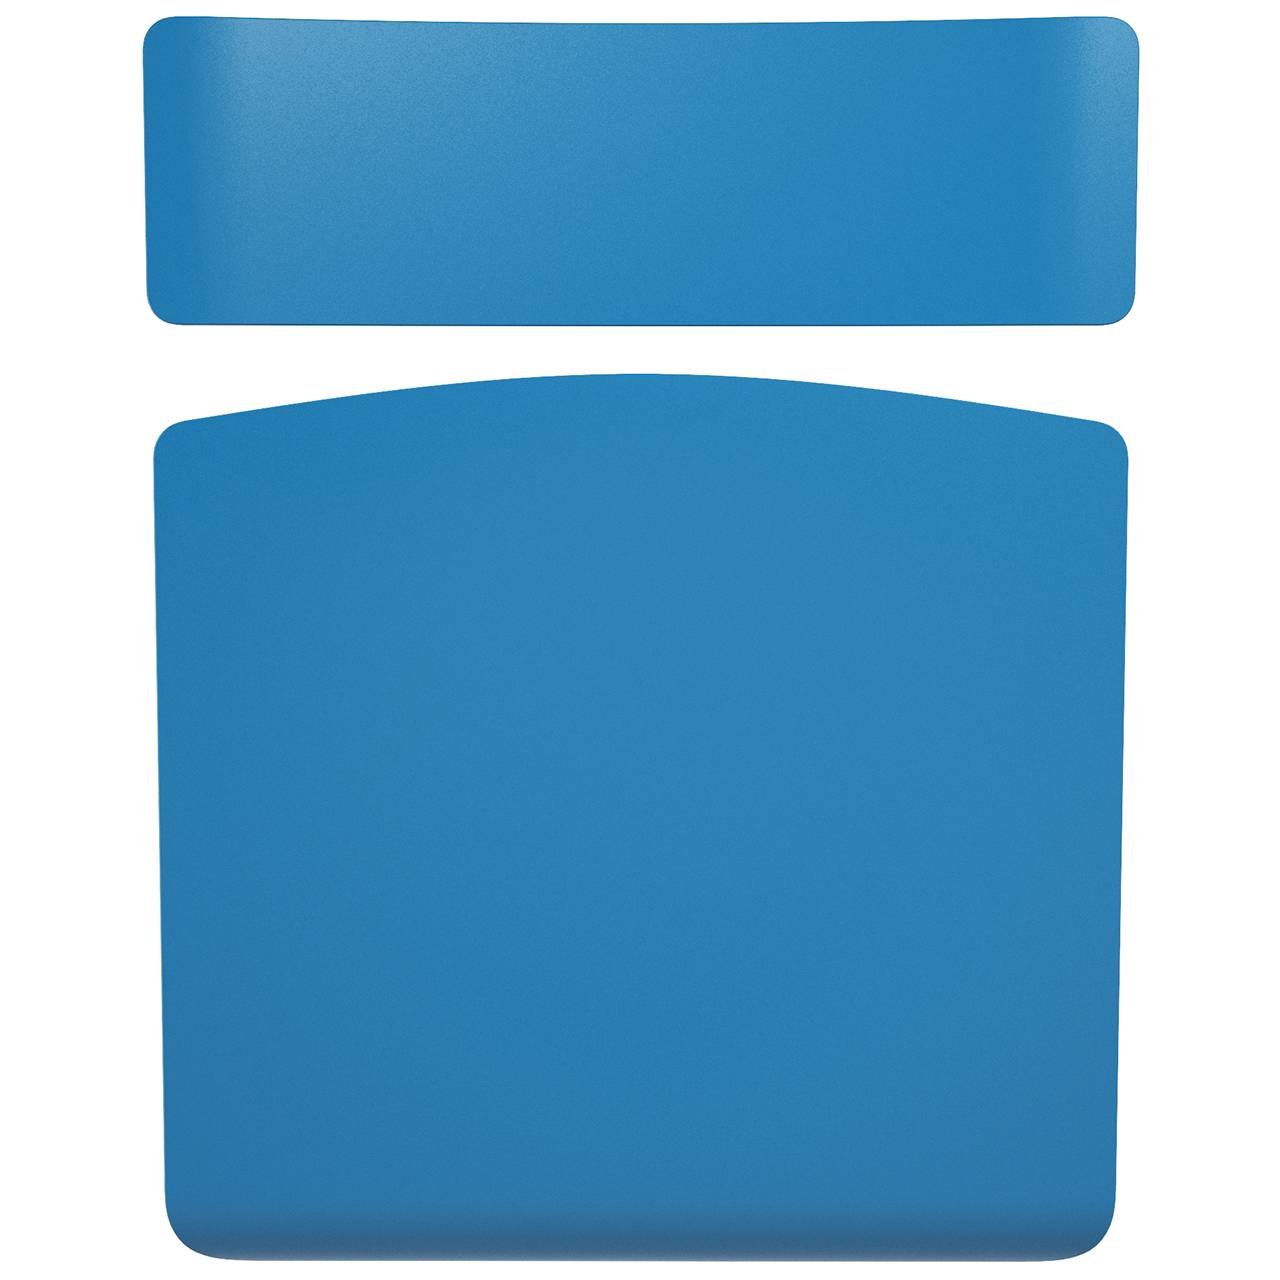 Стул ученический регулируемый (гр. 2-4, 3-5, 4-6 или 5-7) коричневый Синий 5-7 прямоугольная